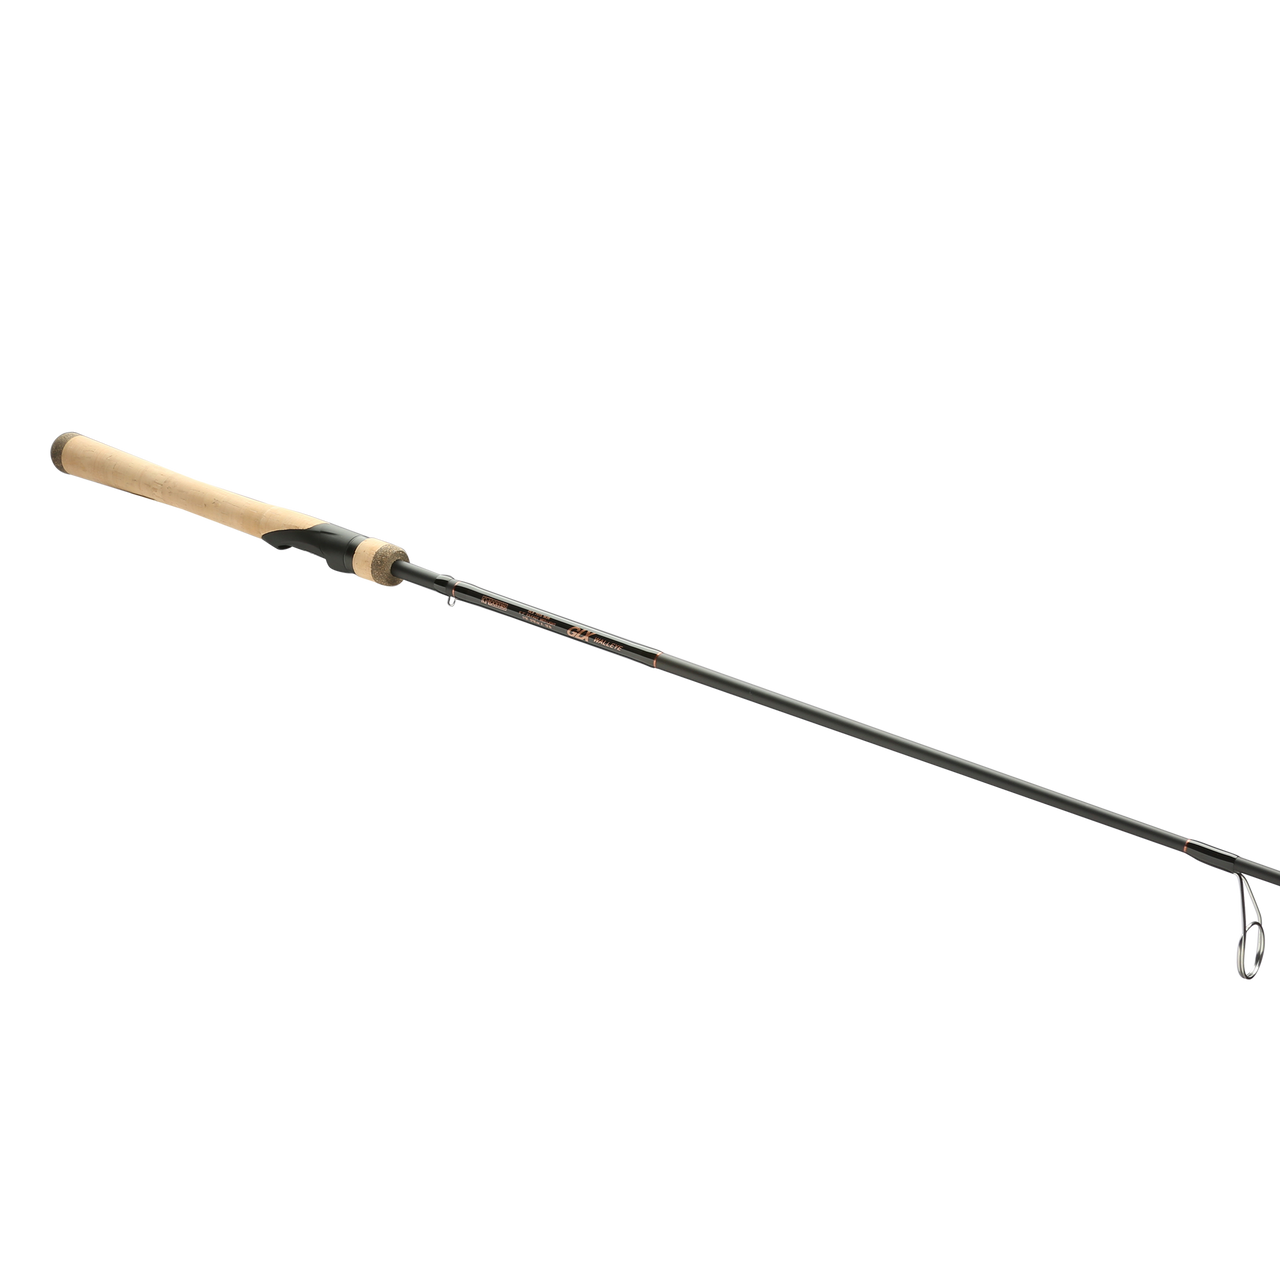 Top 5 Best Walleye Jigging Rods [Review 2023] - Elite Tech Walleye Spinning  Fishing Rod/Fishing Rod 